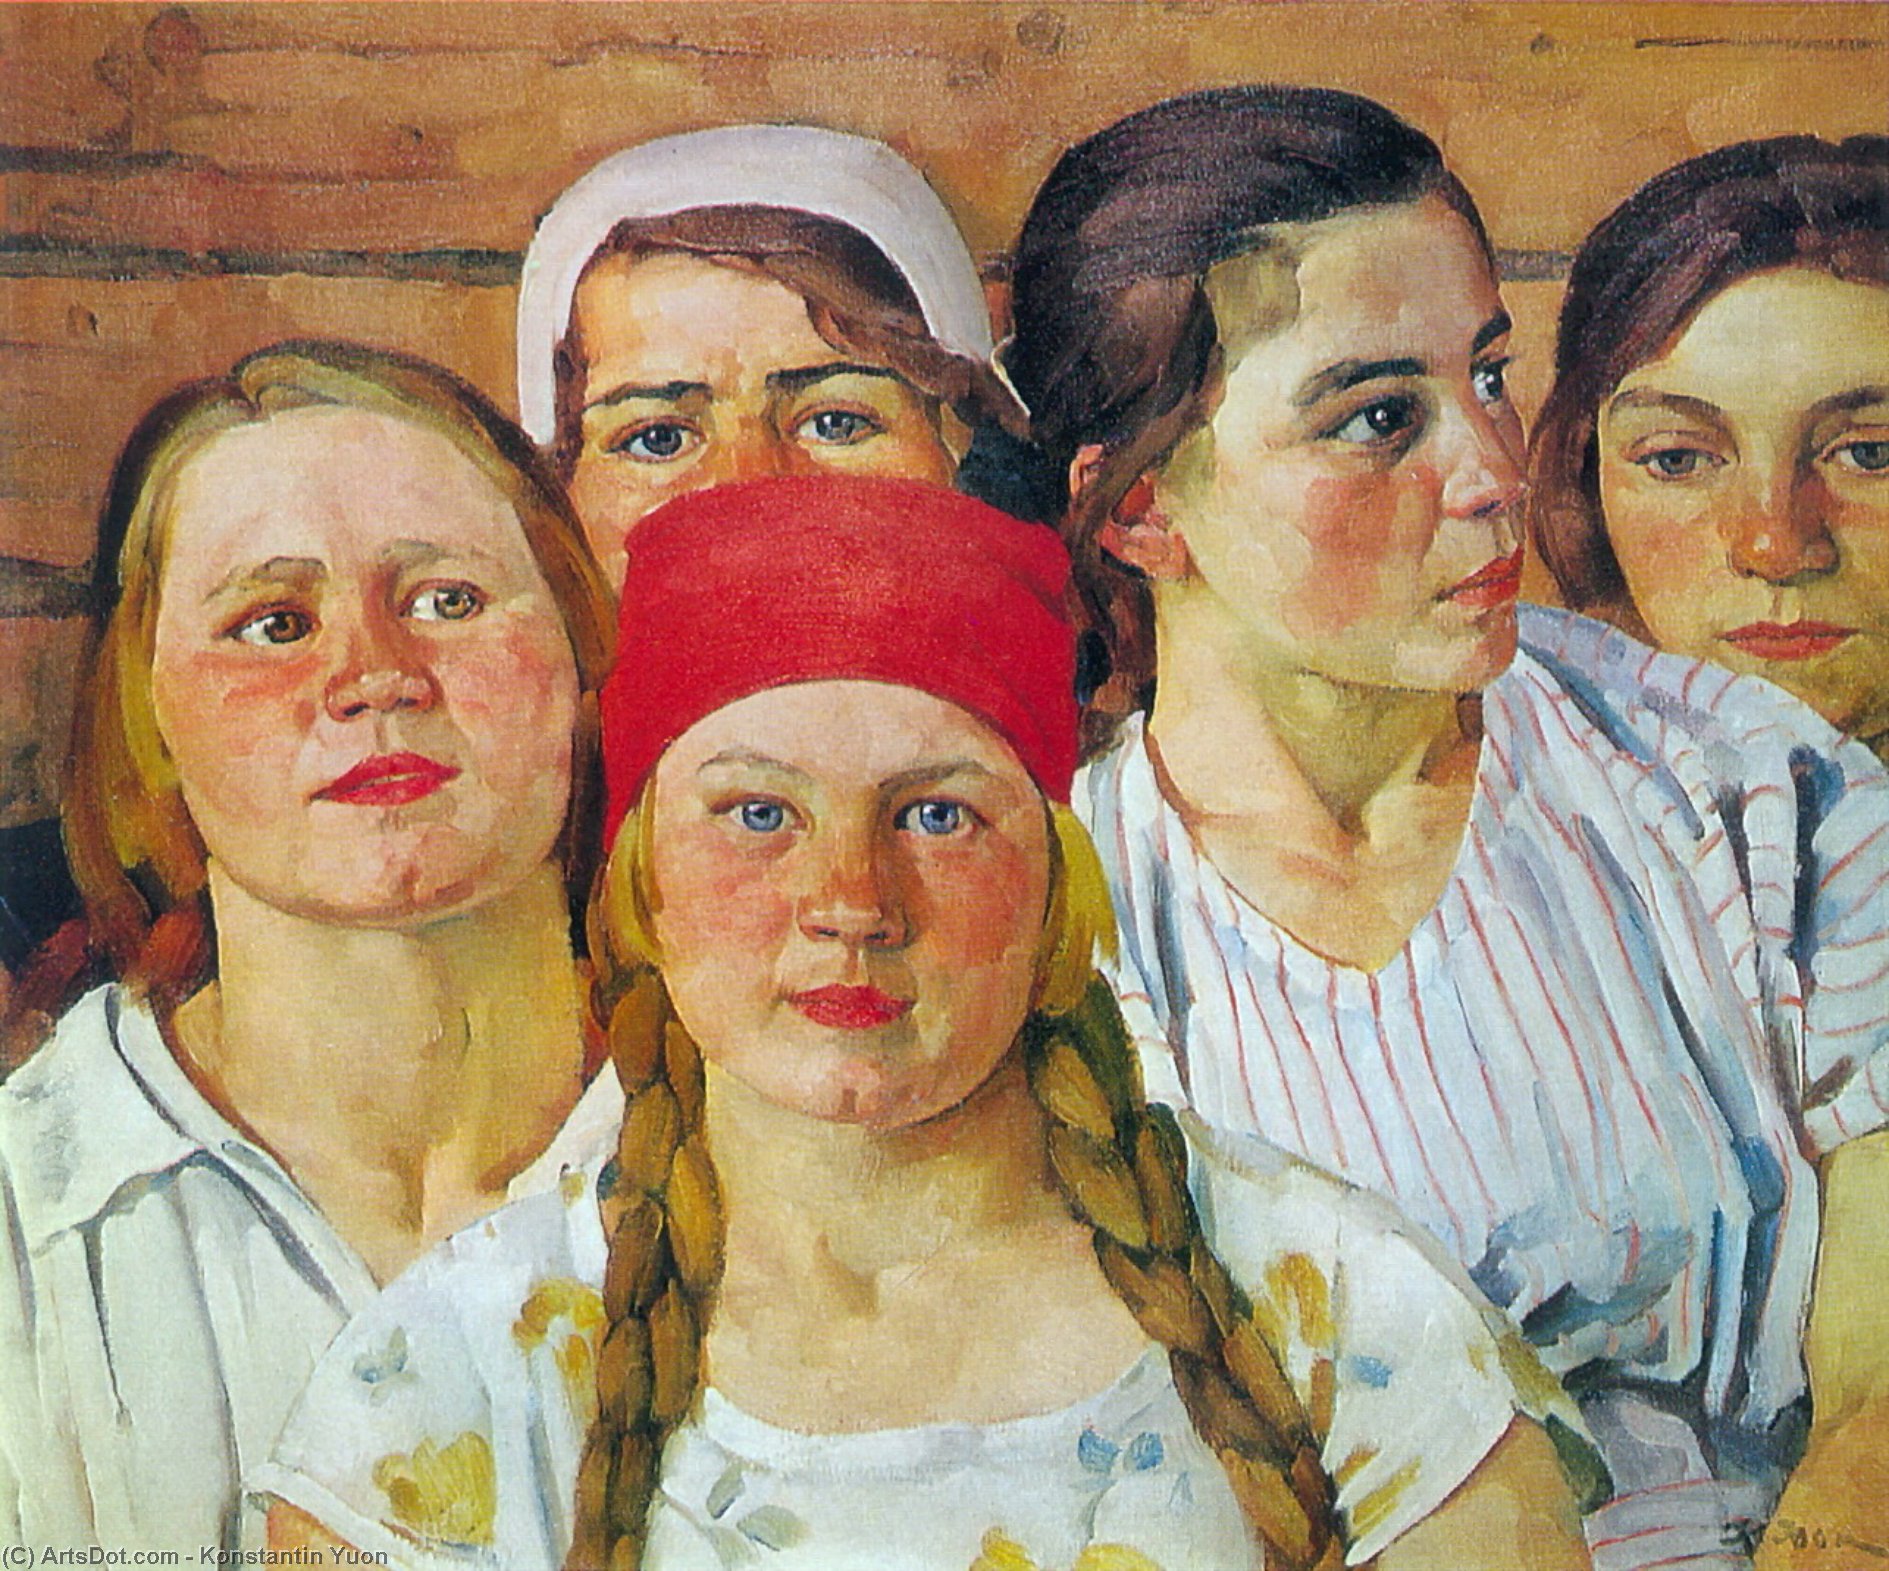 WikiOO.org - Encyclopedia of Fine Arts - Maleri, Artwork Konstantin Yuon - Podmoskovnaya youth. Ligachevo